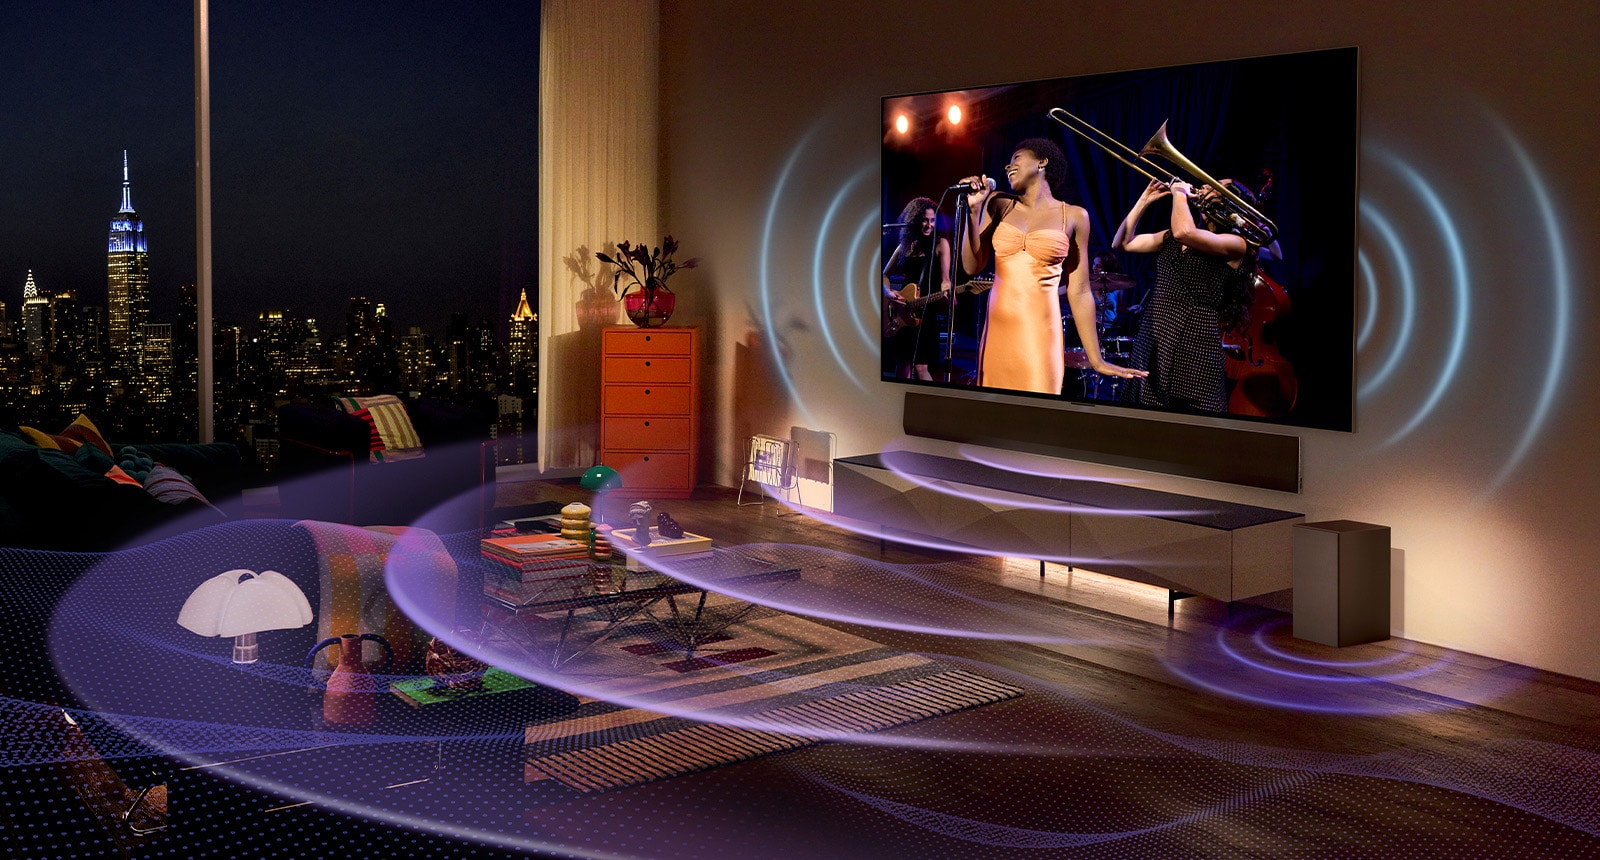 صورة لتلفزيون LG OLED في غرفة تعرض حفلًا موسيقيًا. الخطوط المنحنية الزرقاء التي تصور صوت التلفزيون والخطوط المنحنية الأرجوانية التي تعبر عن صوت Soundbar تملأ المساحة.